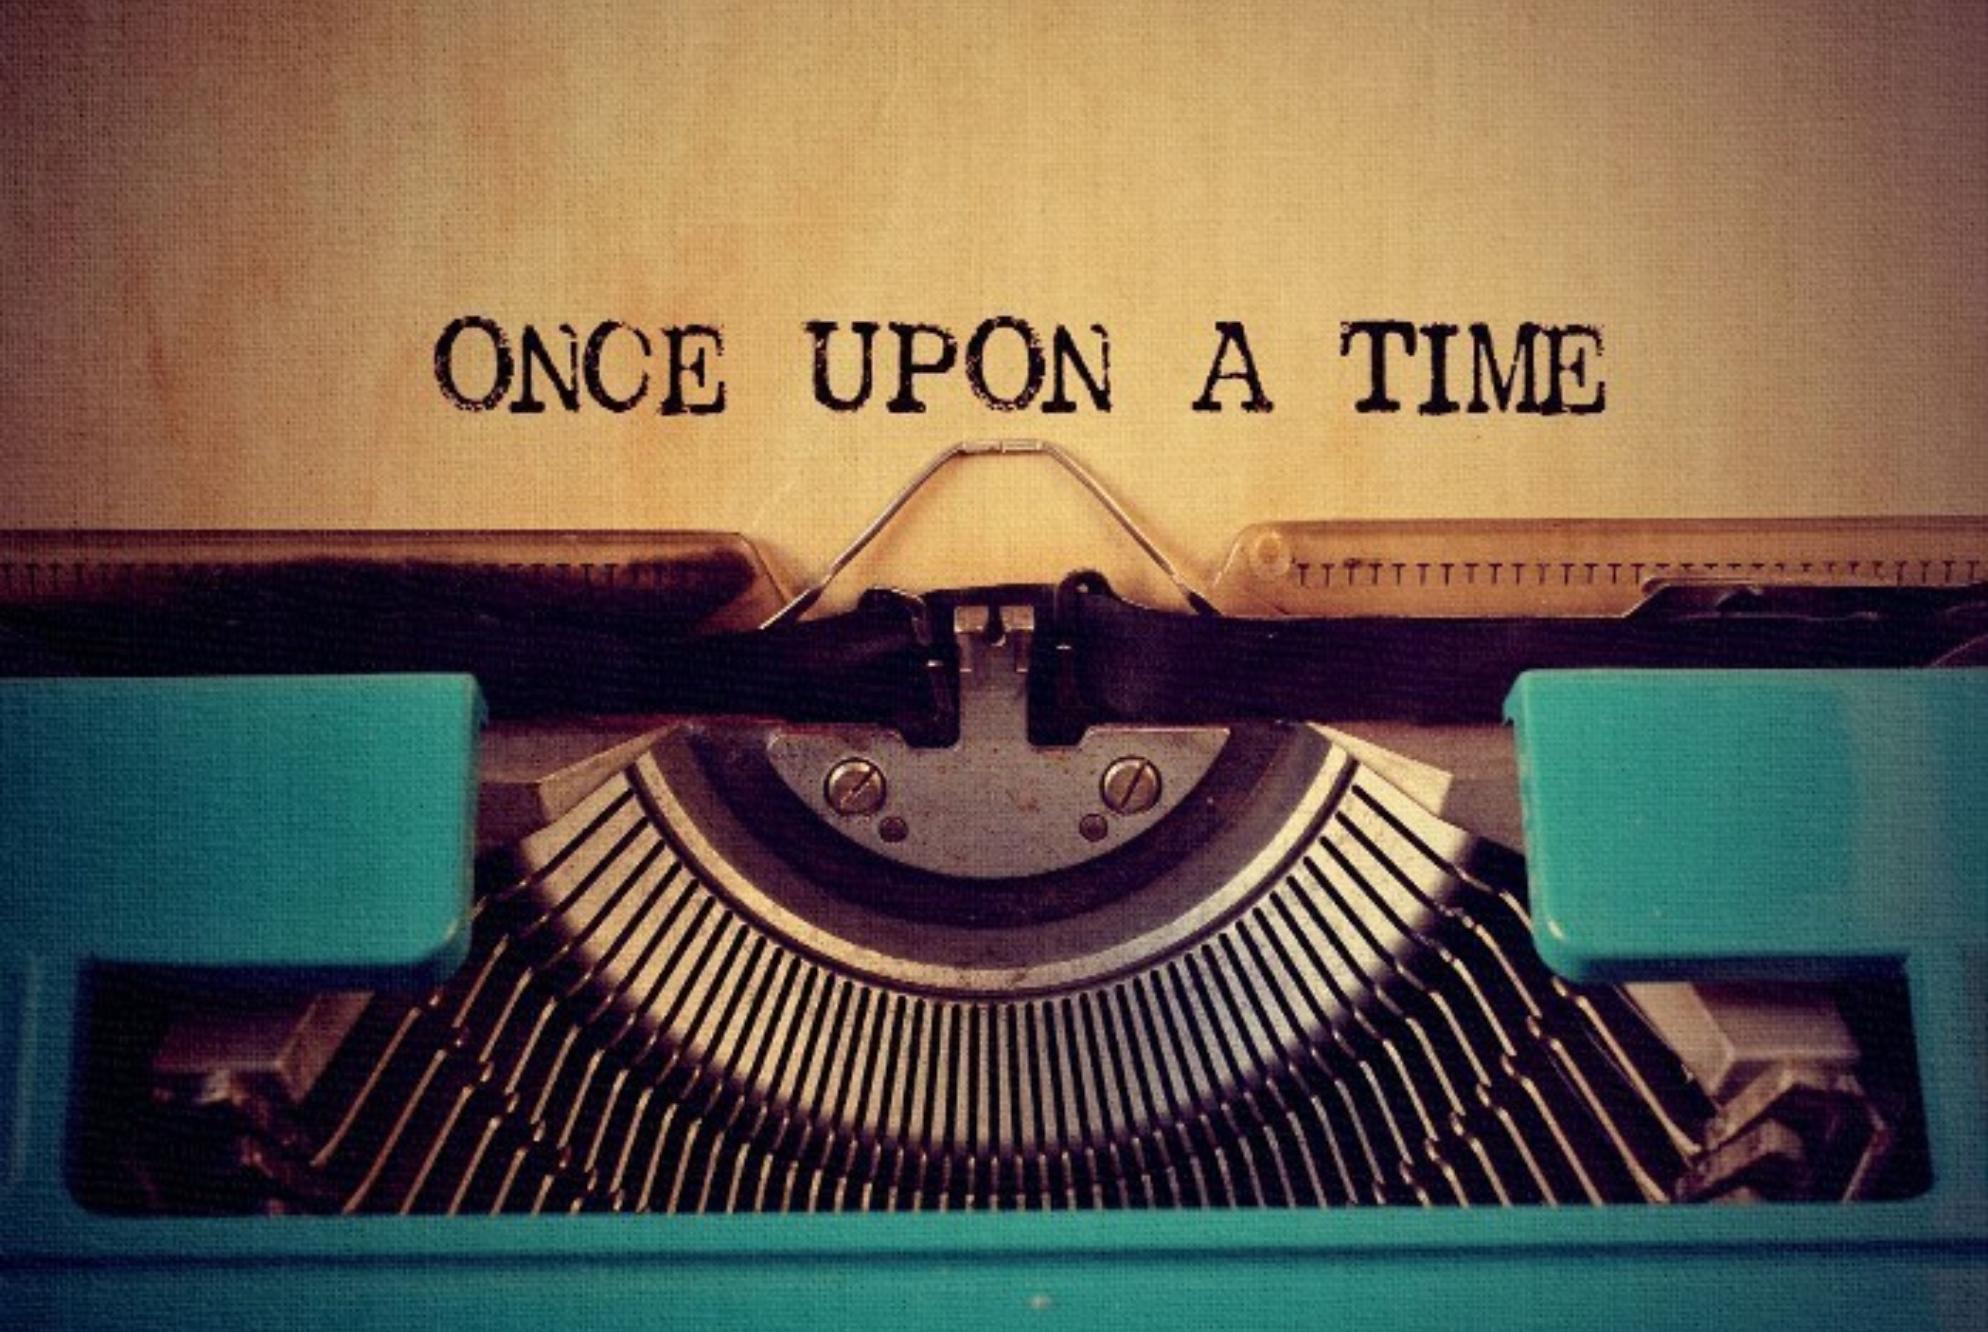 “Μια φορά κι έναν καιρό”: Τι κρύβεται πίσω από την φράση με την οποία ξεκινούν όλα τα παραμύθια